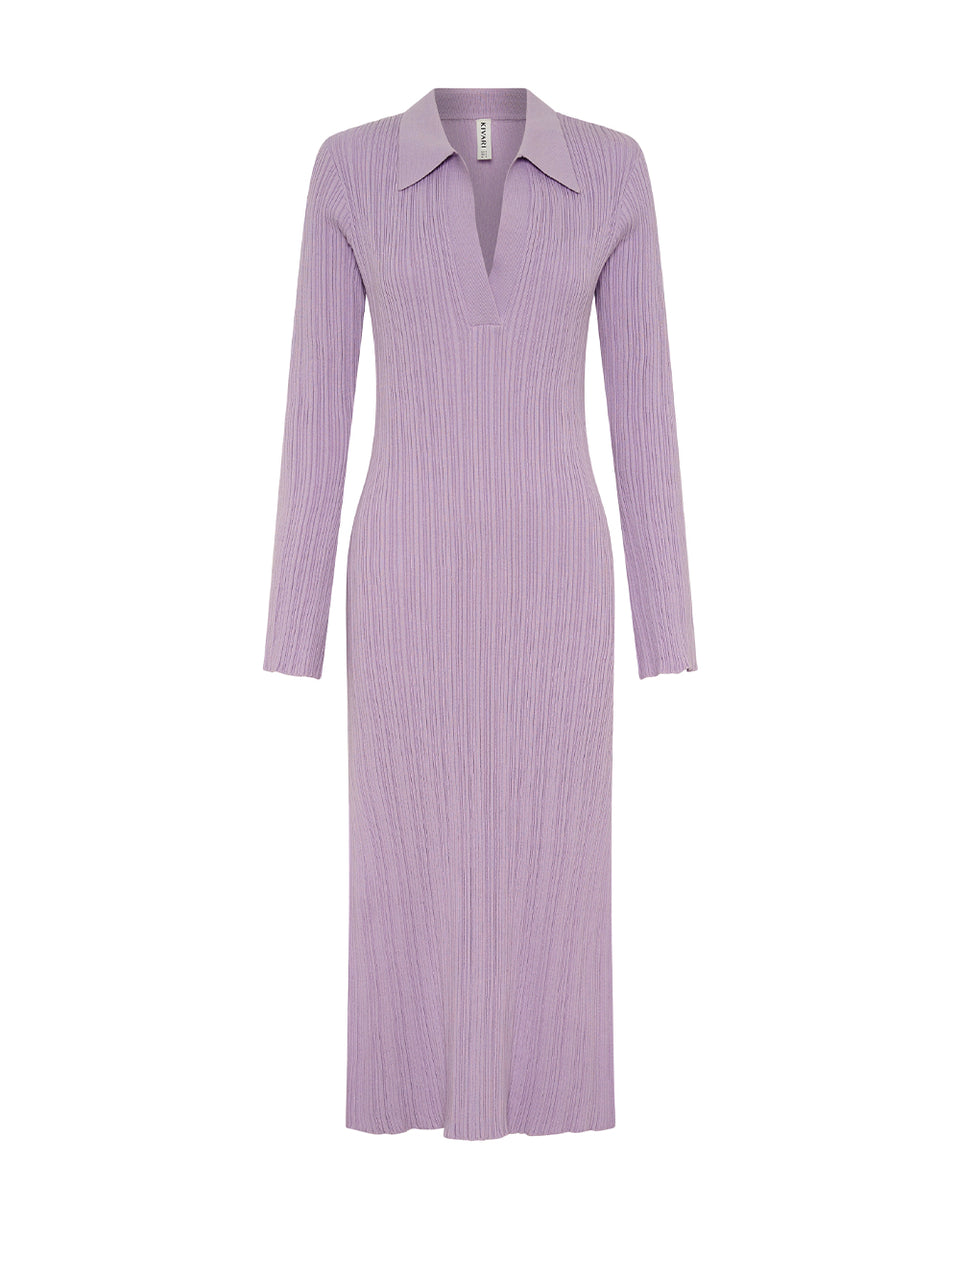 Alana Knit Dress Lilac KIVARI | Lilac knit midi dress